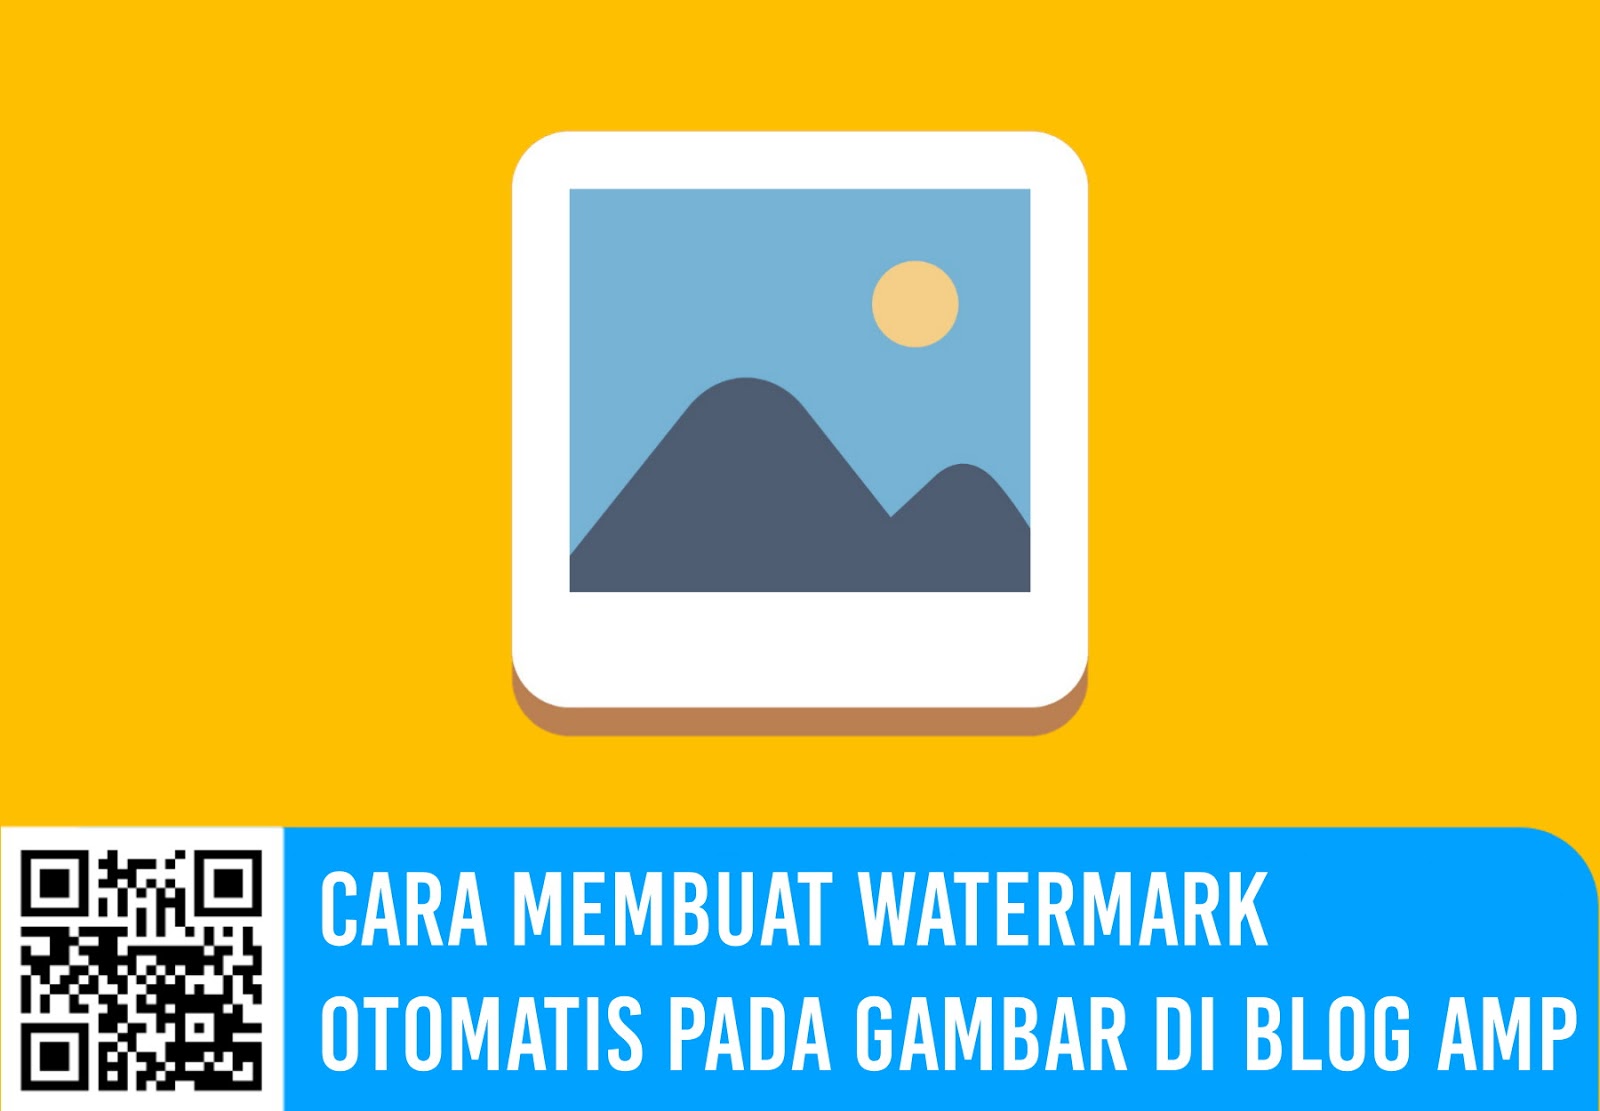 Cara Membuat Watermark Otomatis pada Gambar di Blog AMP √  Cara Membuat Watermark Otomatis pada Gambar di Blog AMP